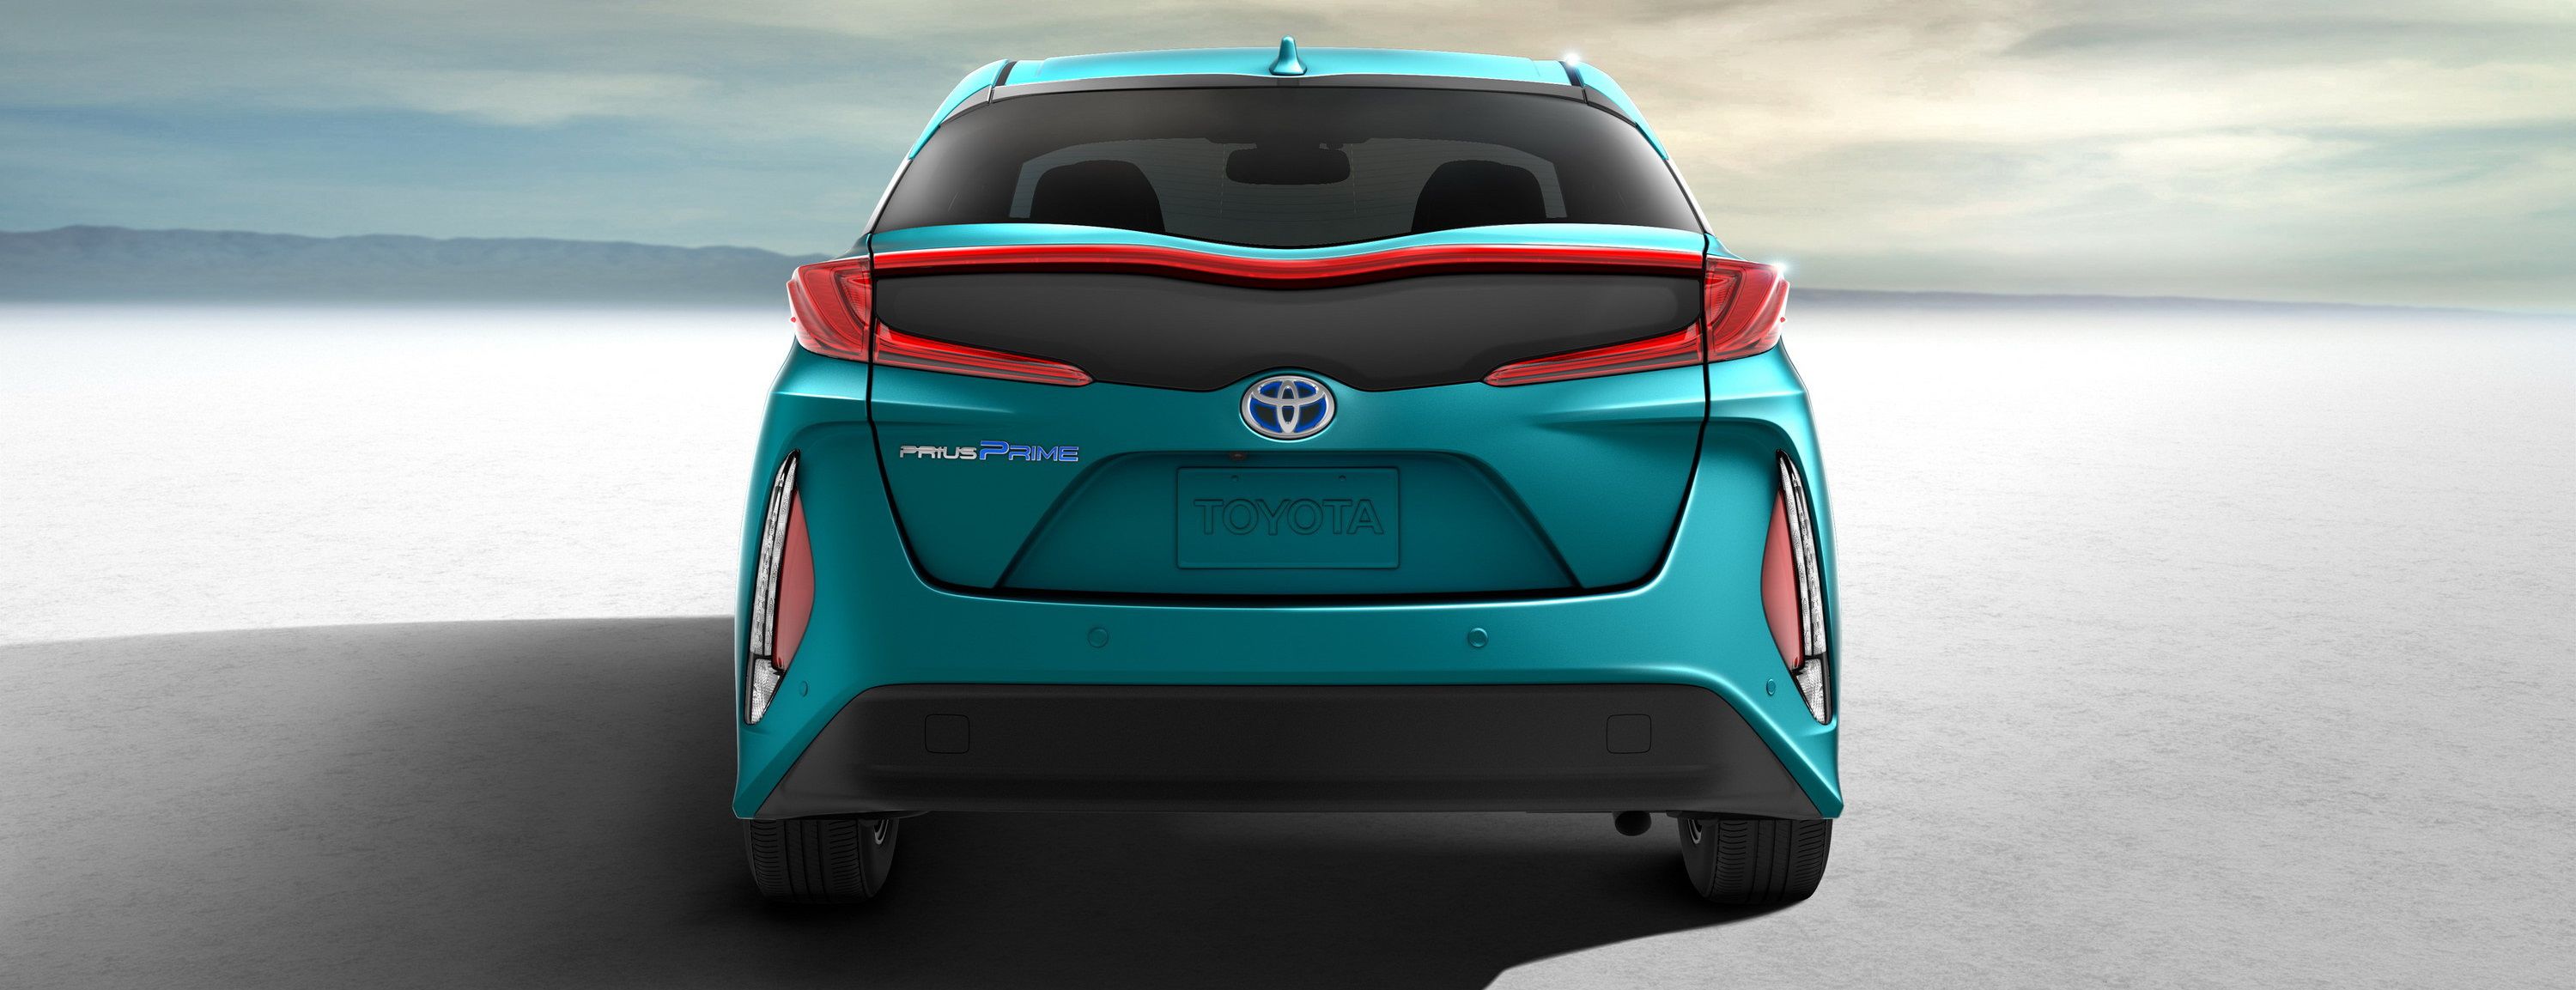 التصميم الخلفي للسيارة تويوتا بريوس برايم 2017